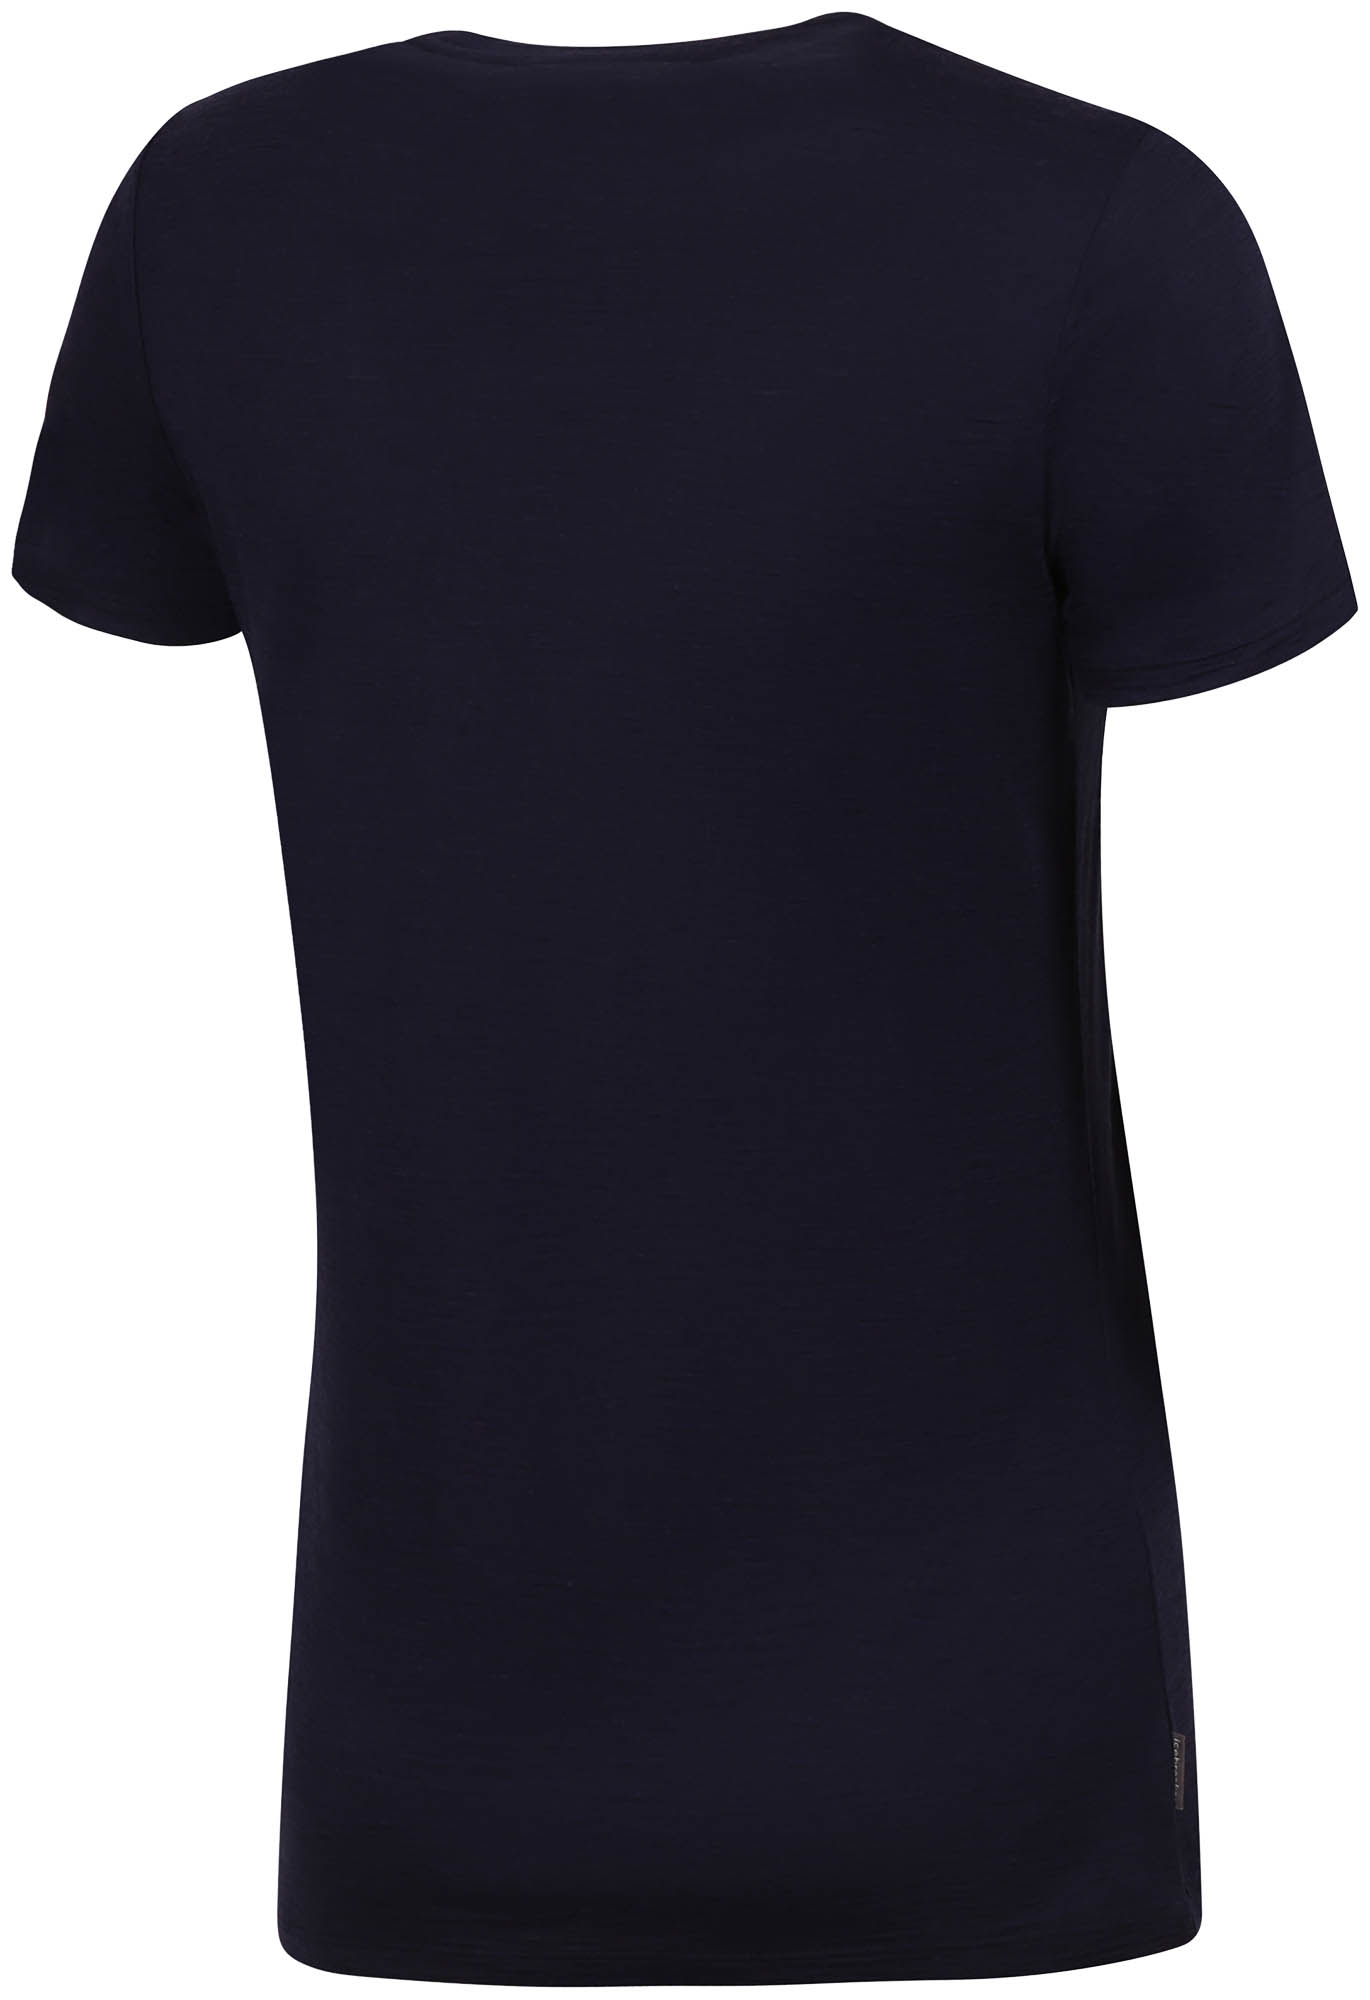 Universal short sleeved merino T-shirt